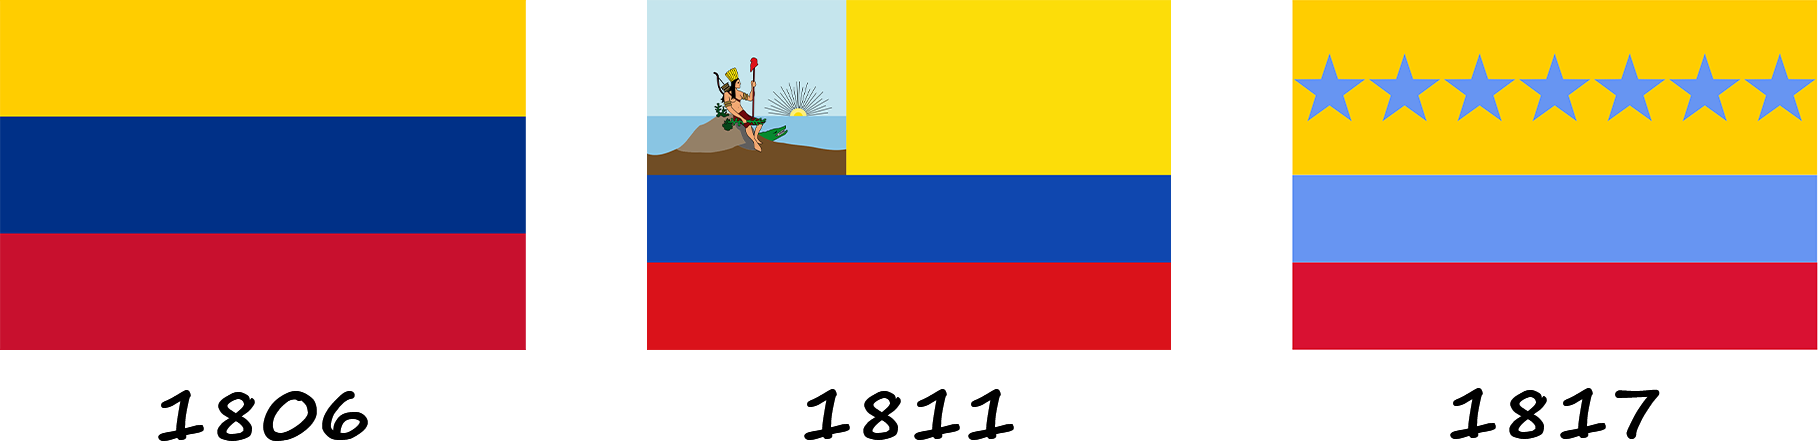 Evolution of the Venezuelan flag